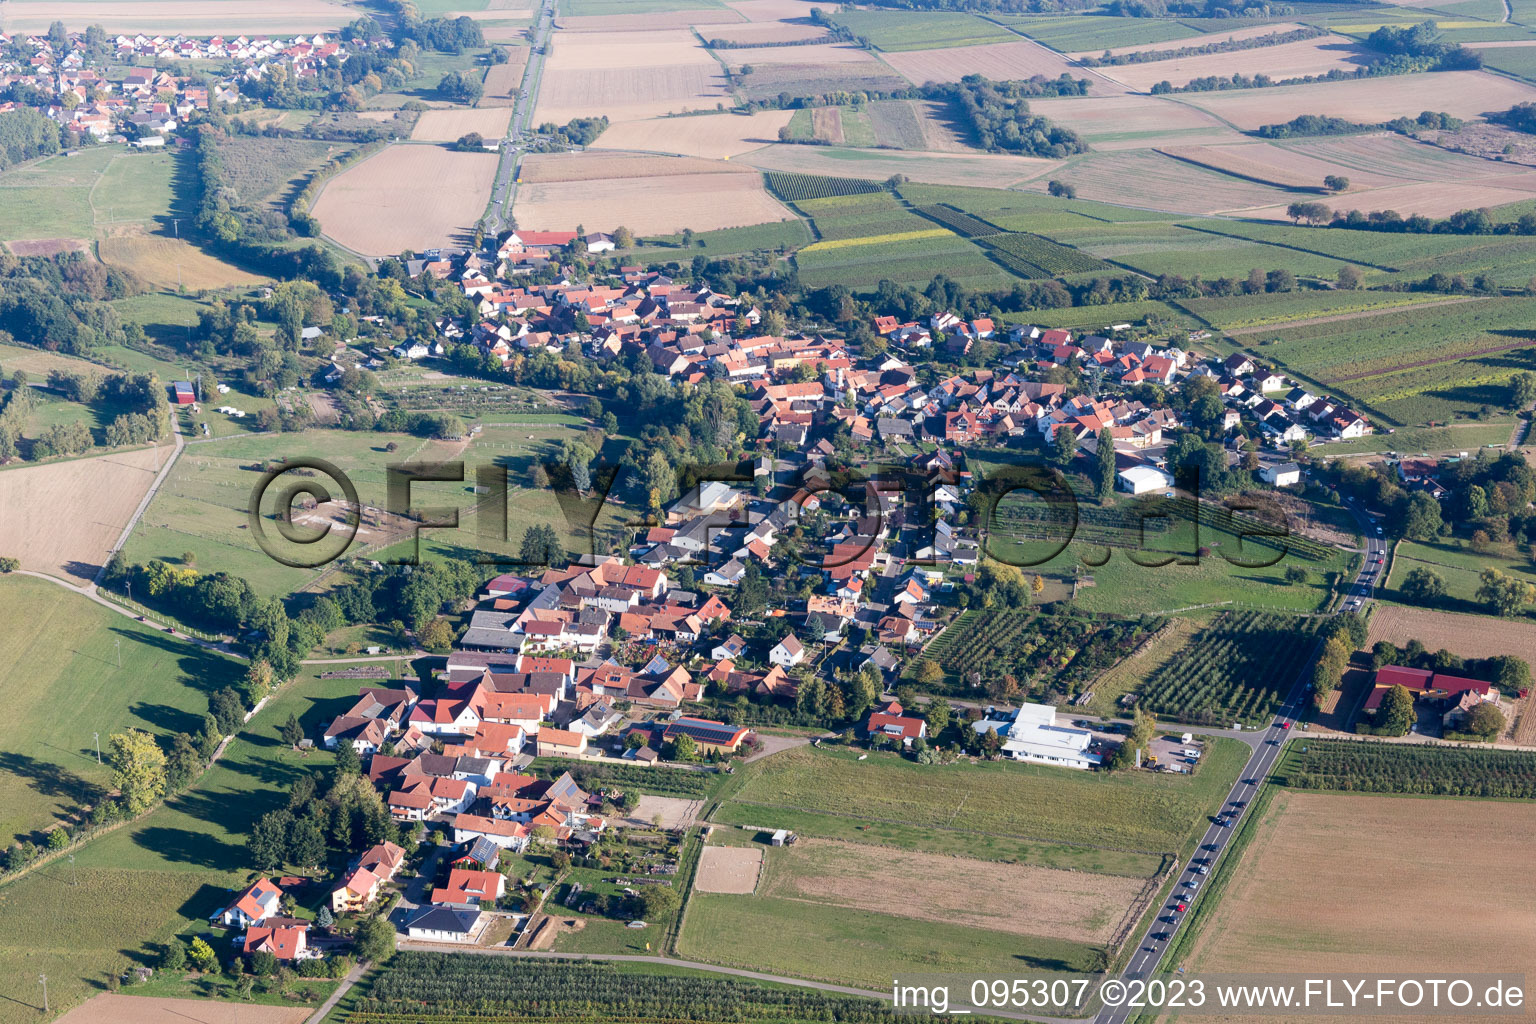 Oberhausen im Bundesland Rheinland-Pfalz, Deutschland aus der Drohnenperspektive